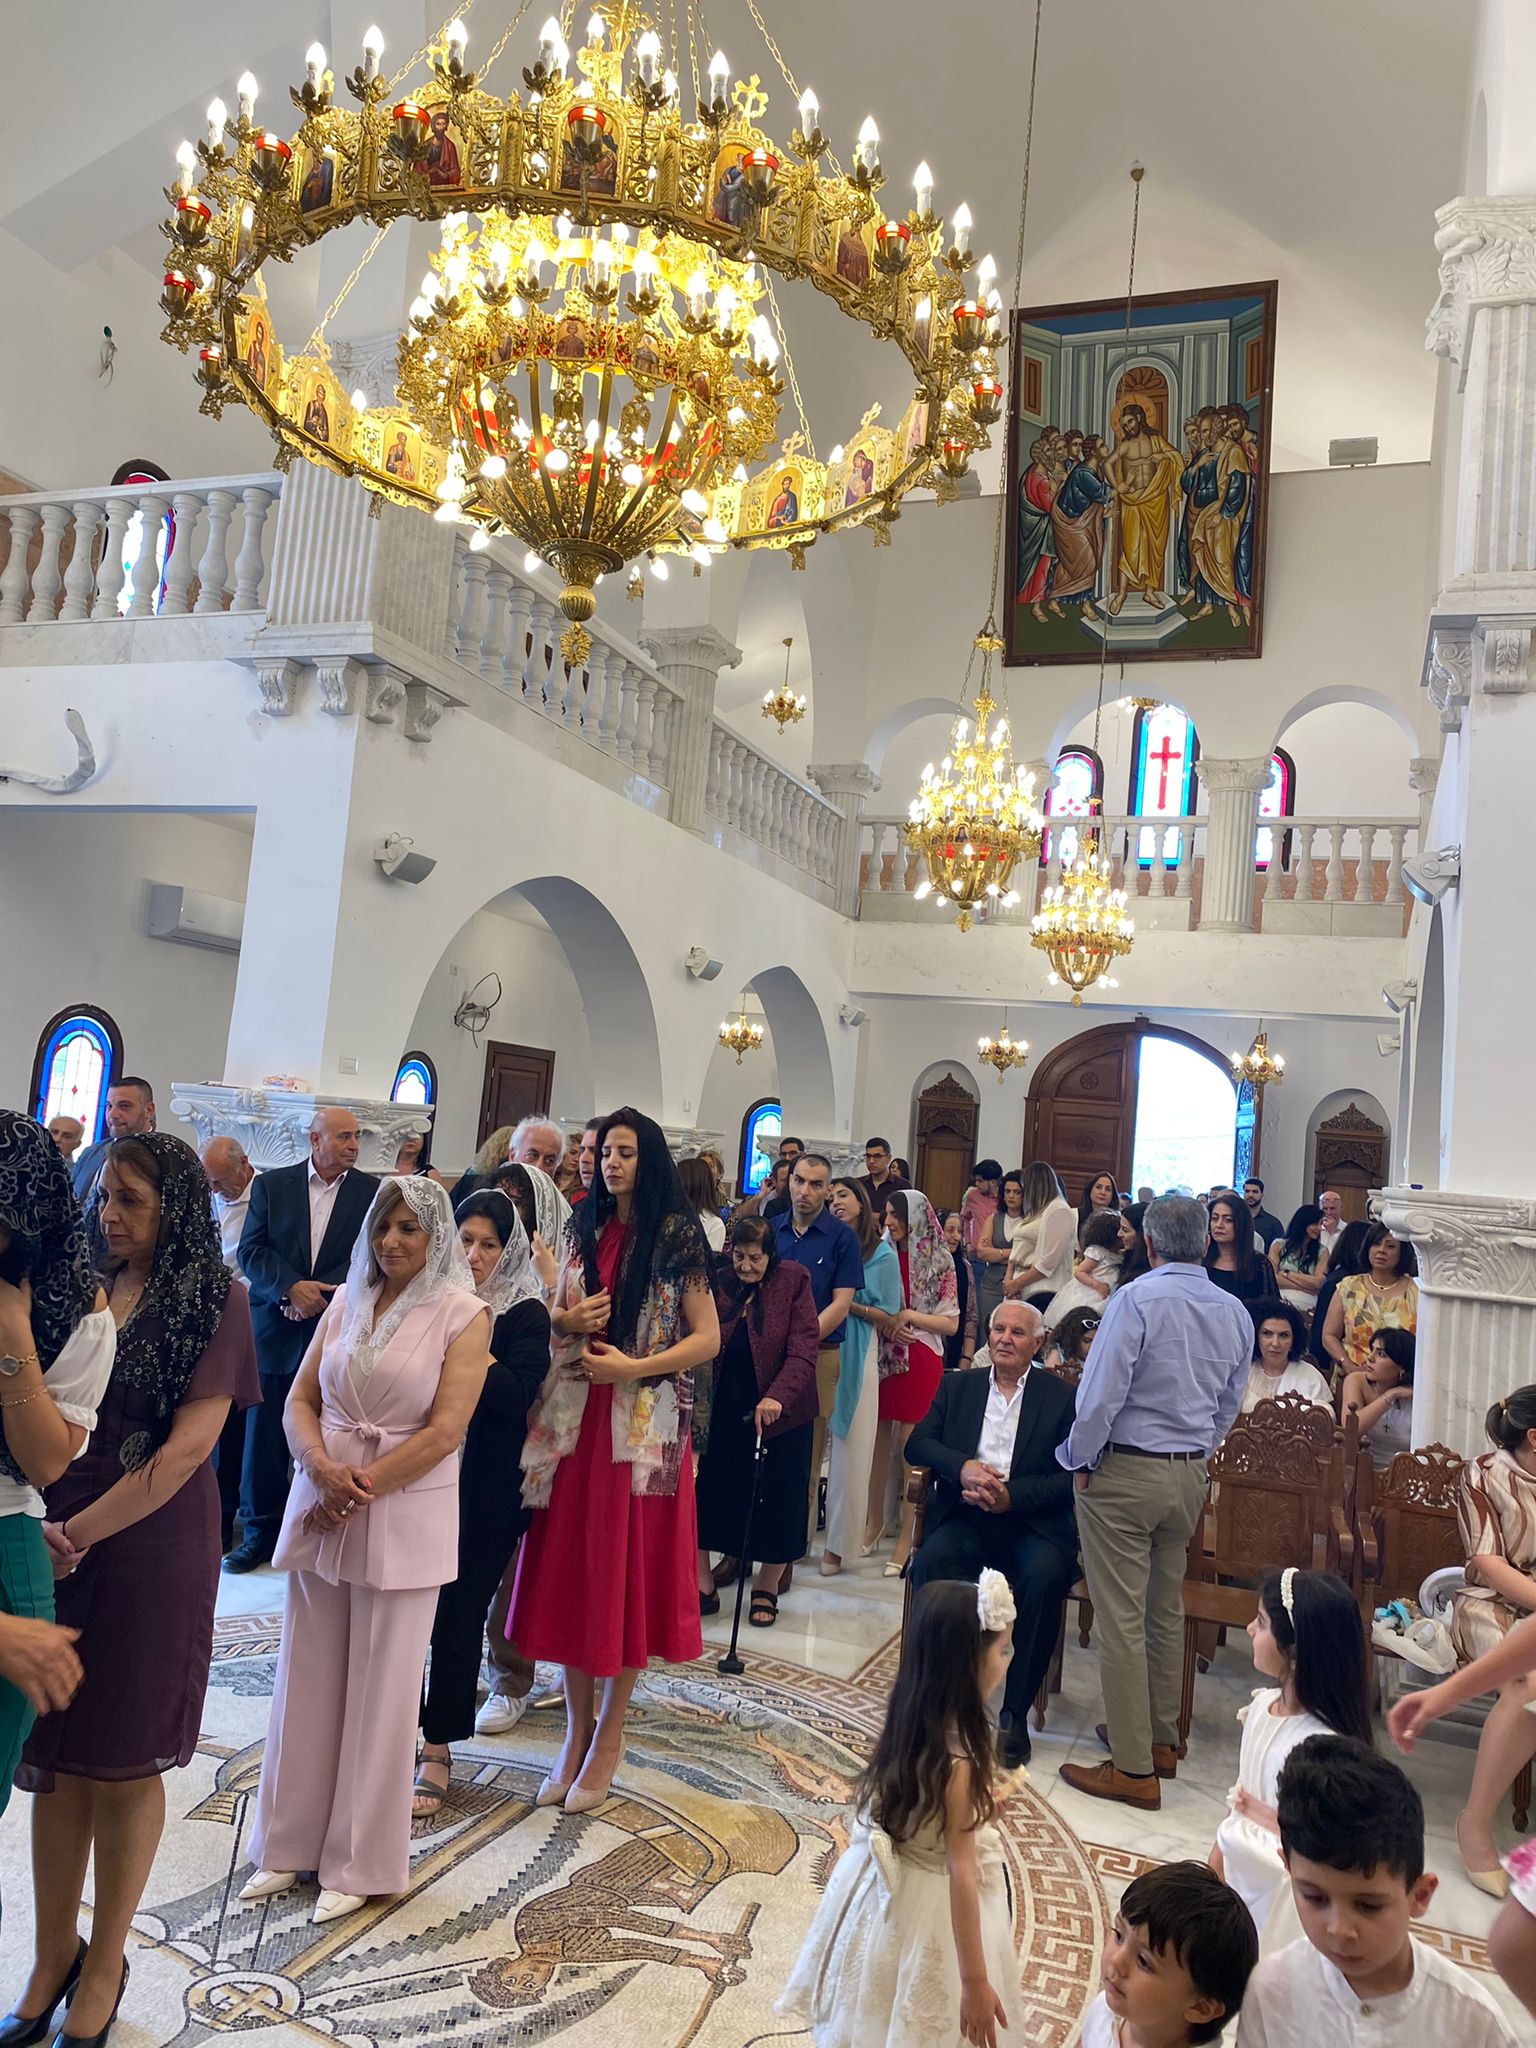  الطائفة الأرثوذكسية في كفرسميع تحتفل بأحد الشعانين في الكنيسة الجديدة F6cs379mncuxapdy